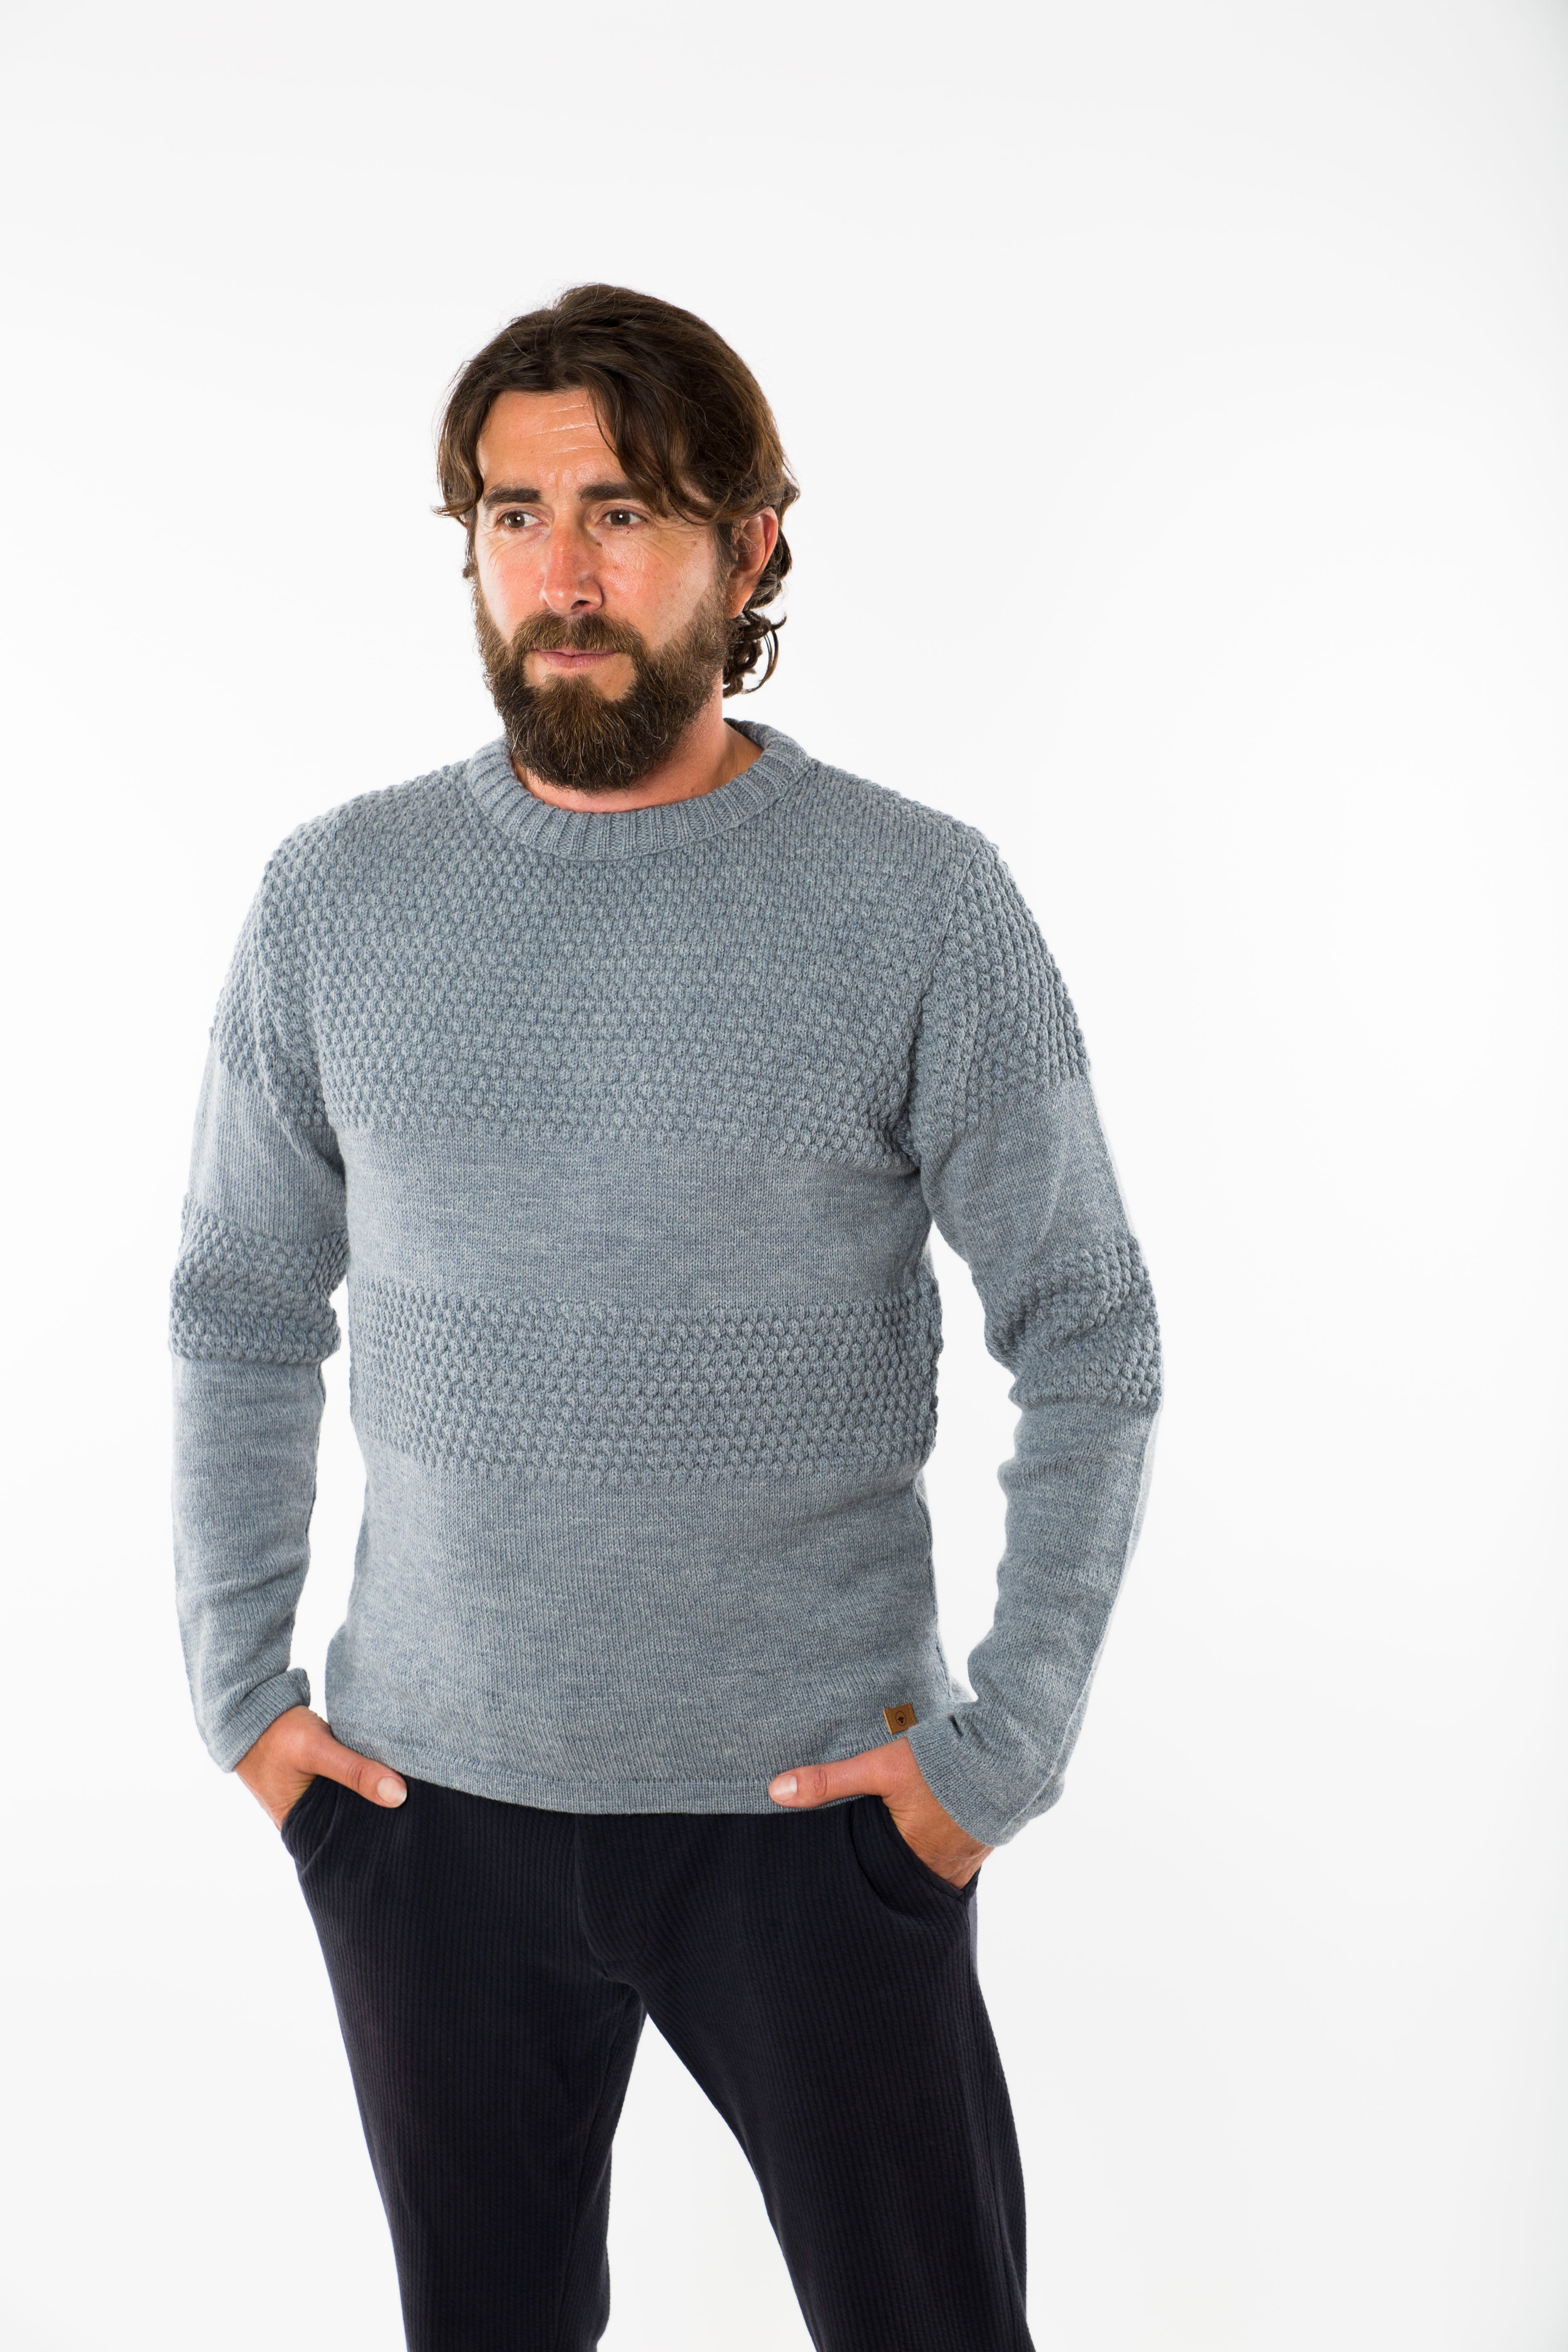 Se Nyhavn Sweater Round Neck - Fuza Wool - Denim hos Fuza Wool